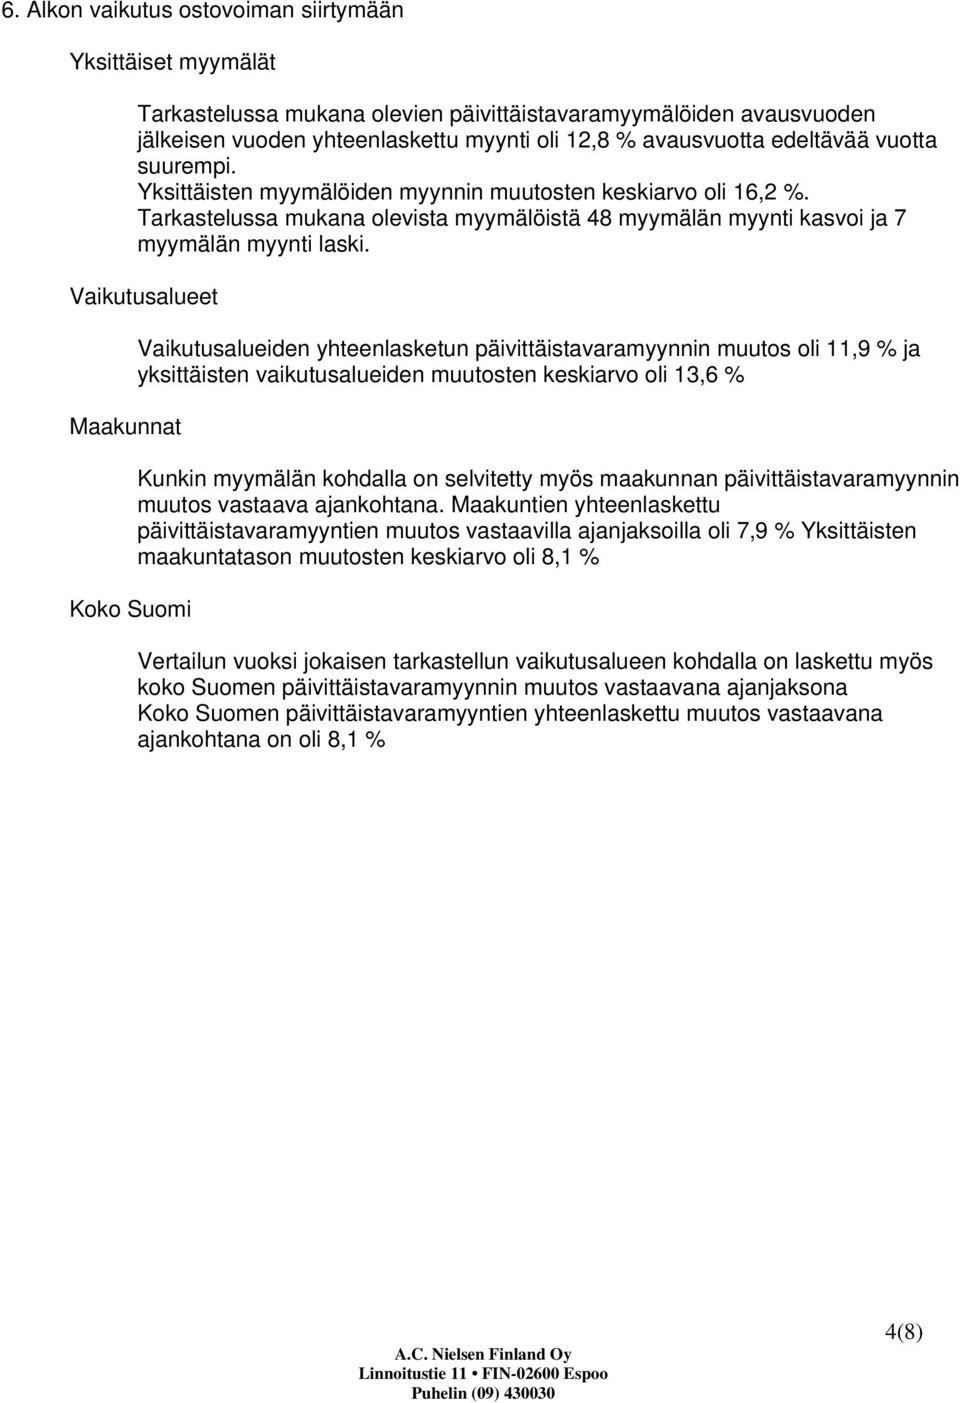 Vaikutusalueet Maakunnat Koko Suomi Vaikutusalueiden yhteenlasketun päivittäistavaramyynnin muutos oli 11,9 % ja yksittäisten vaikutusalueiden muutosten keskiarvo oli 13,6 % Kunkin myymälän kohdalla